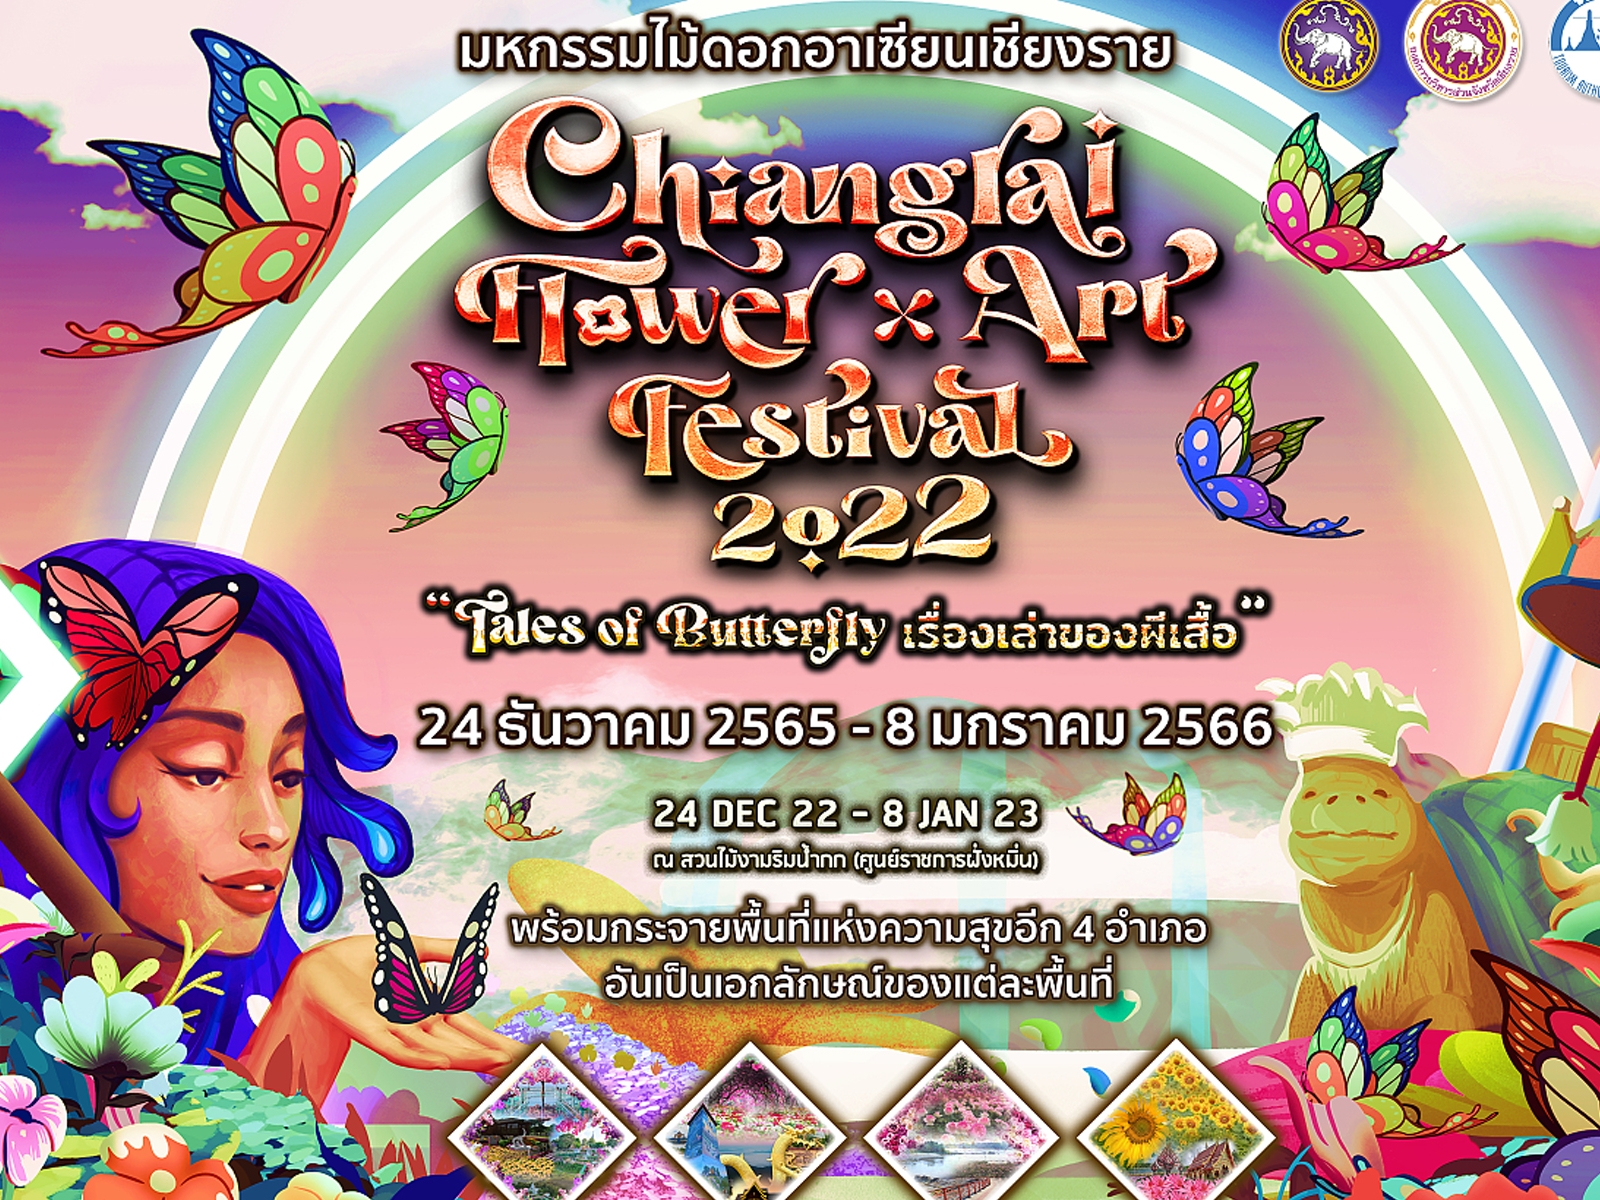 มหกรรมไม้ ดอกอาเซียนเชียงราย Chiang Rai Flower and Art Festival 2022